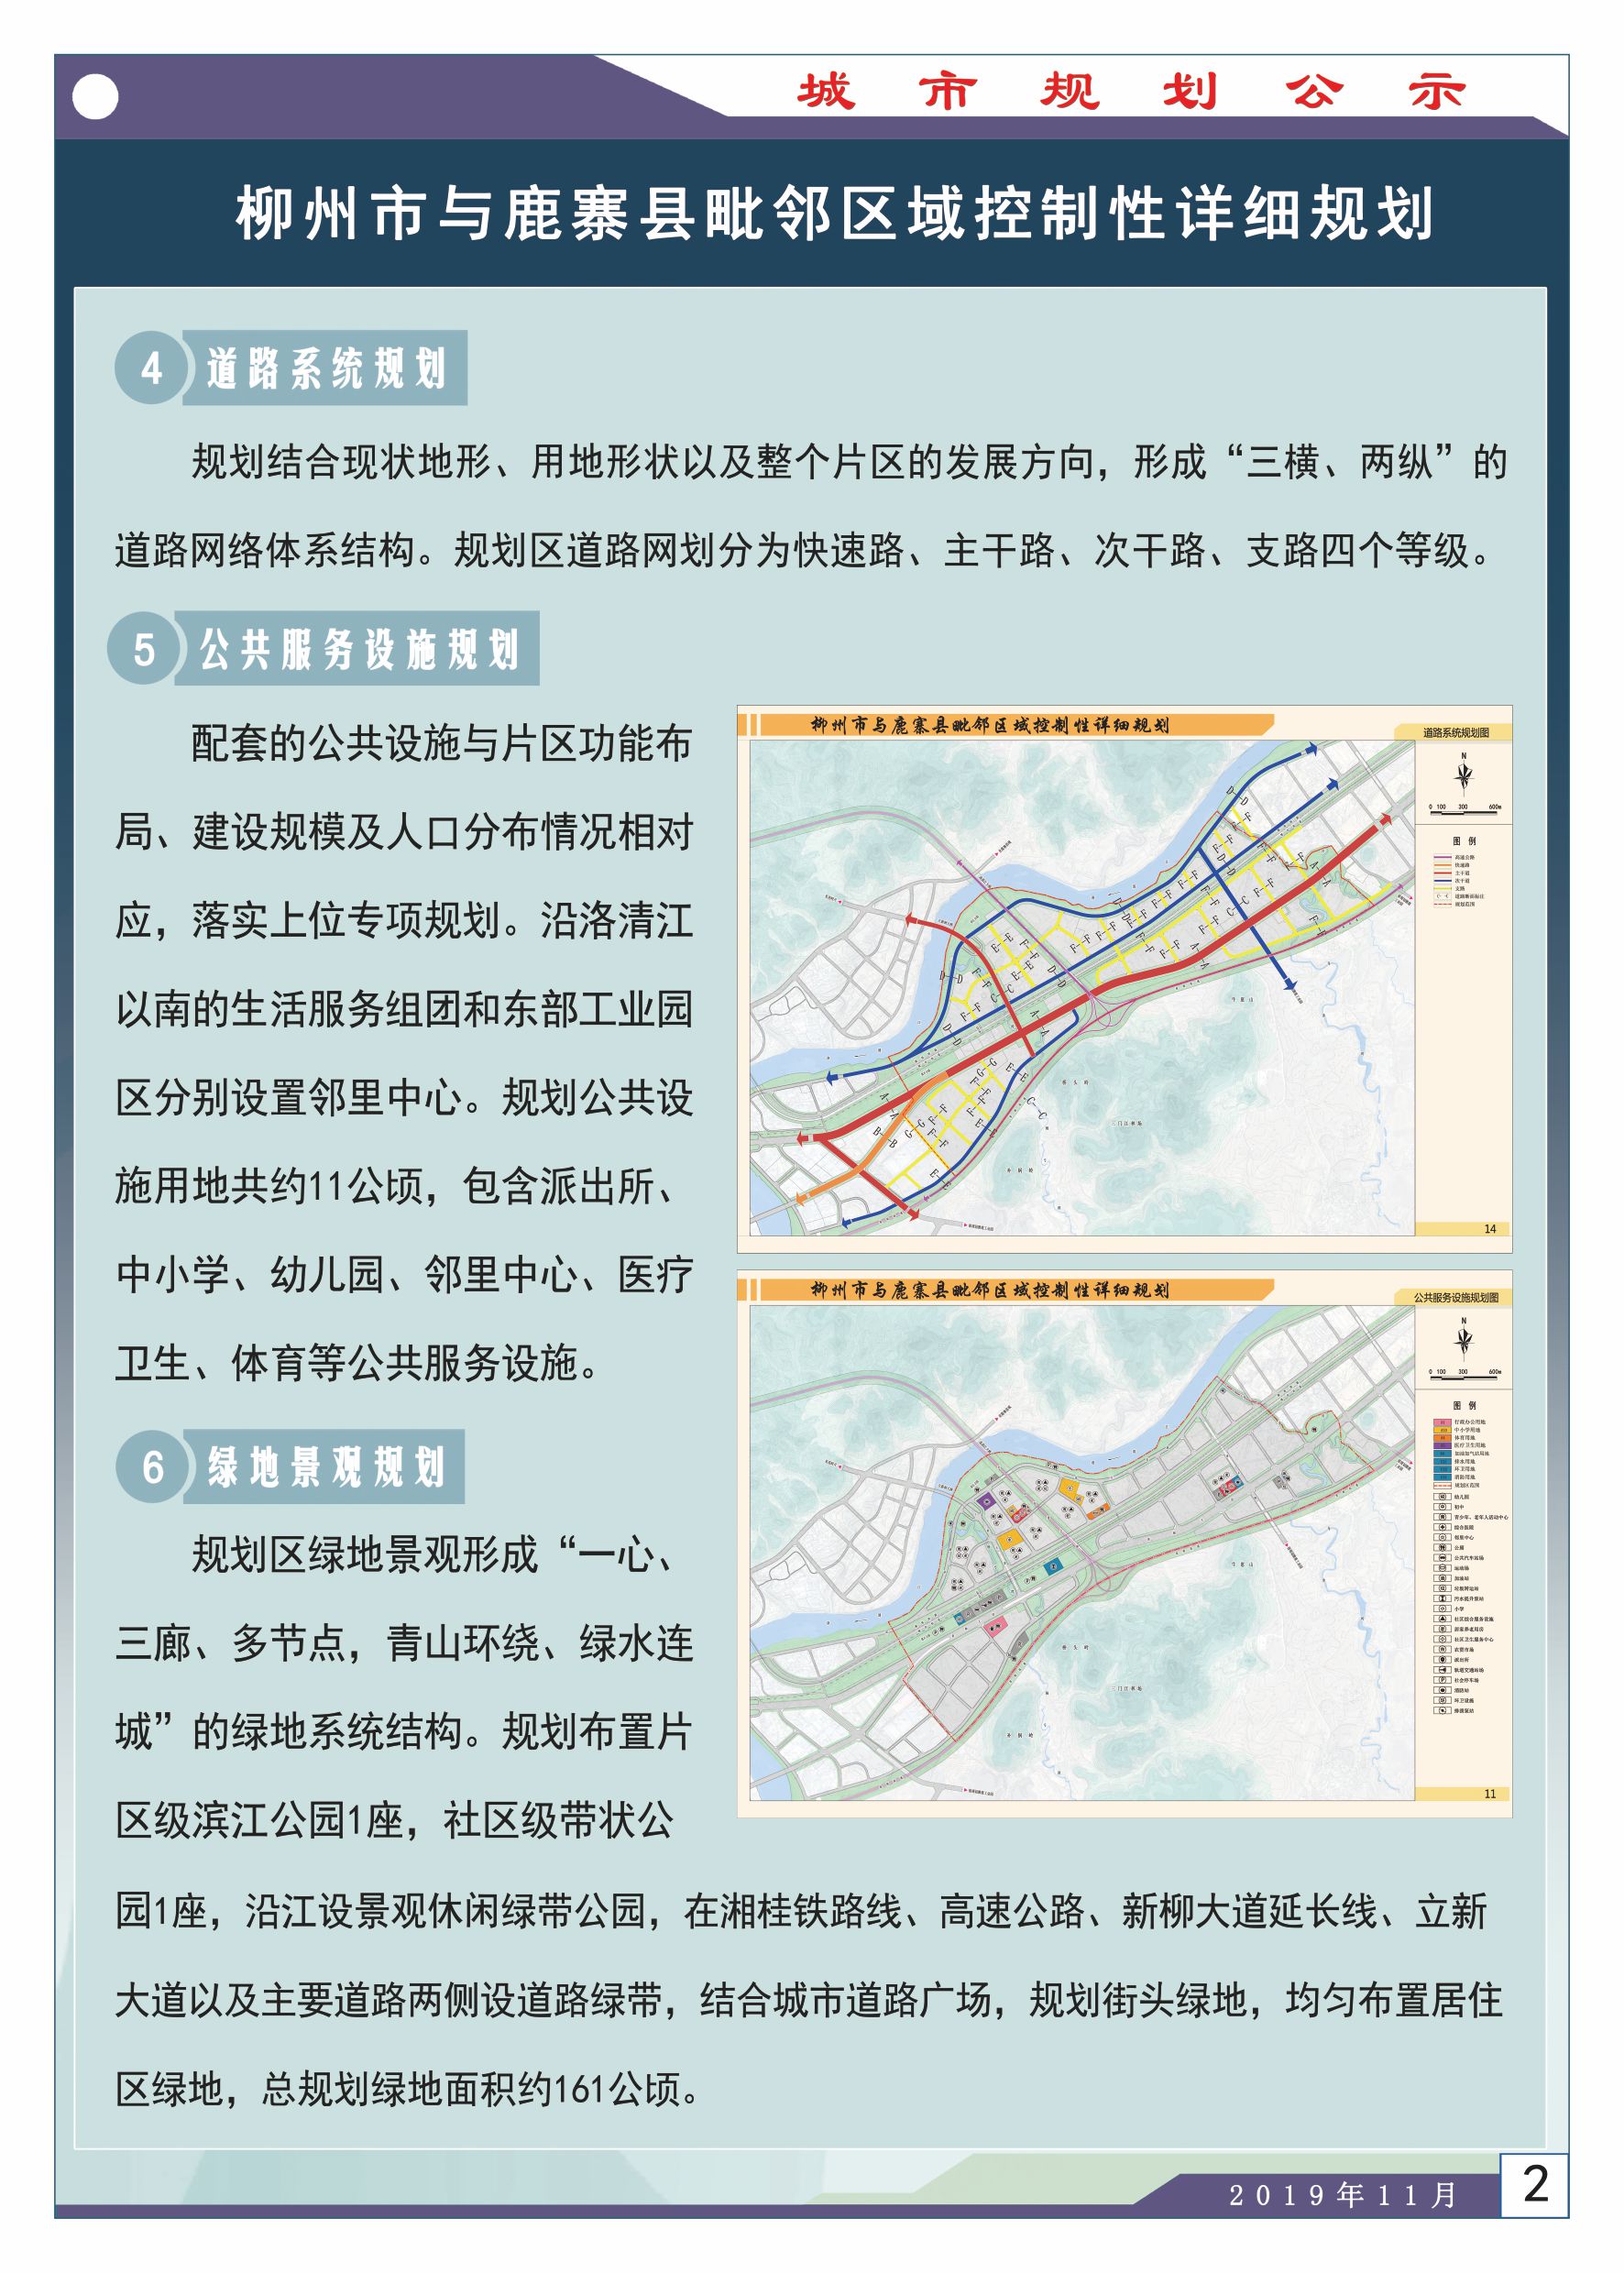 柳州市与鹿寨县毗邻区域有新规划总规划面积达520万㎡